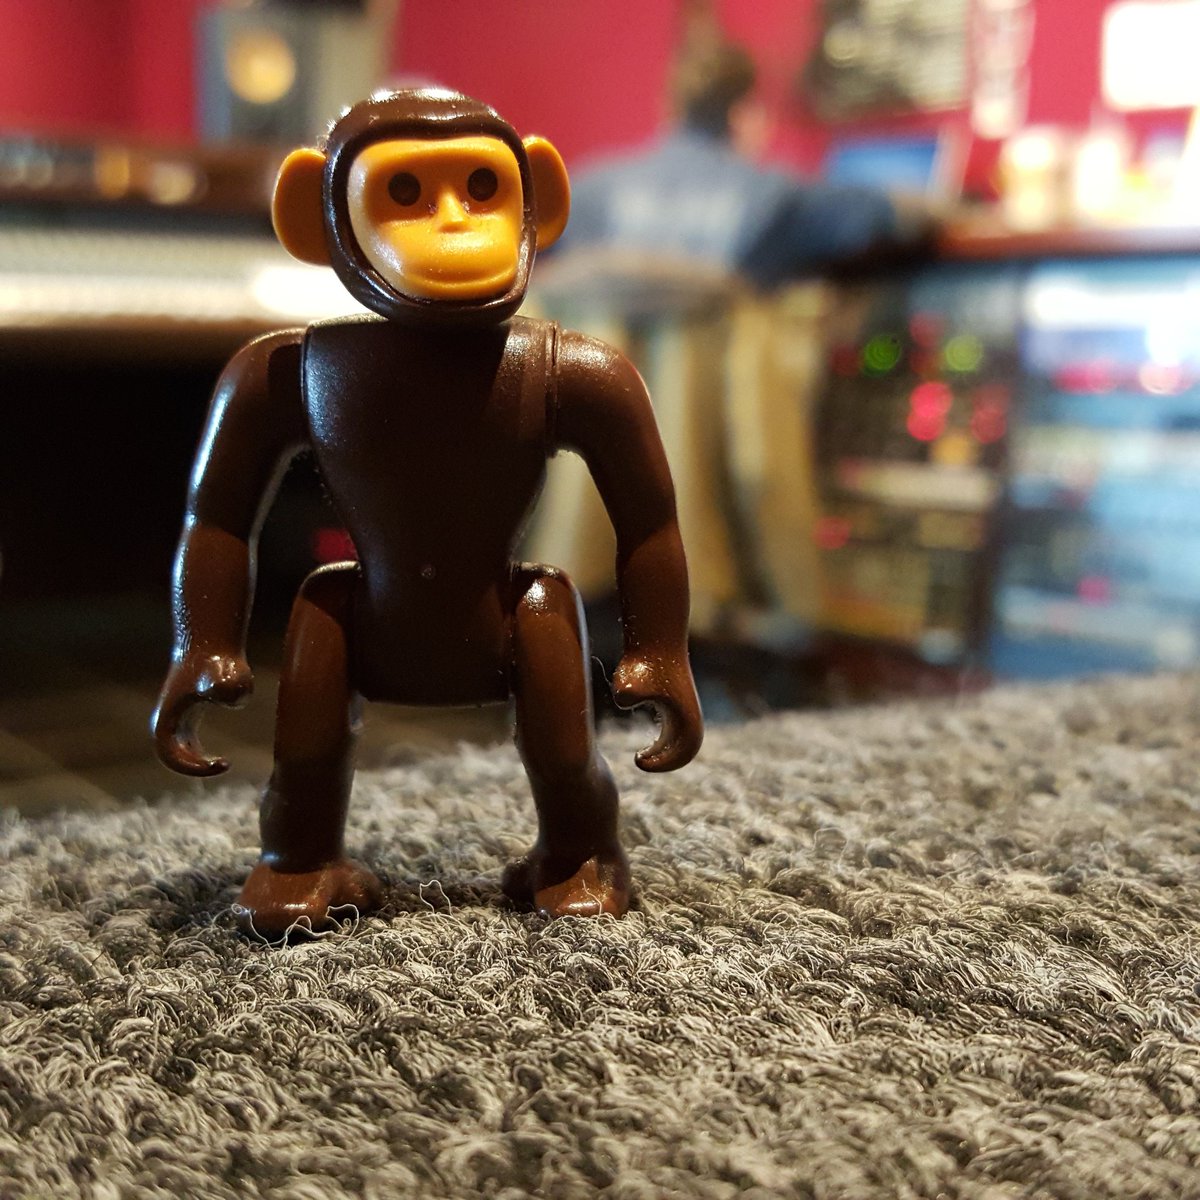 Day 2 at Electrical Audio is go! 
Yeehaw! 
#monkey #ElectricalAudio #SteveAlbini